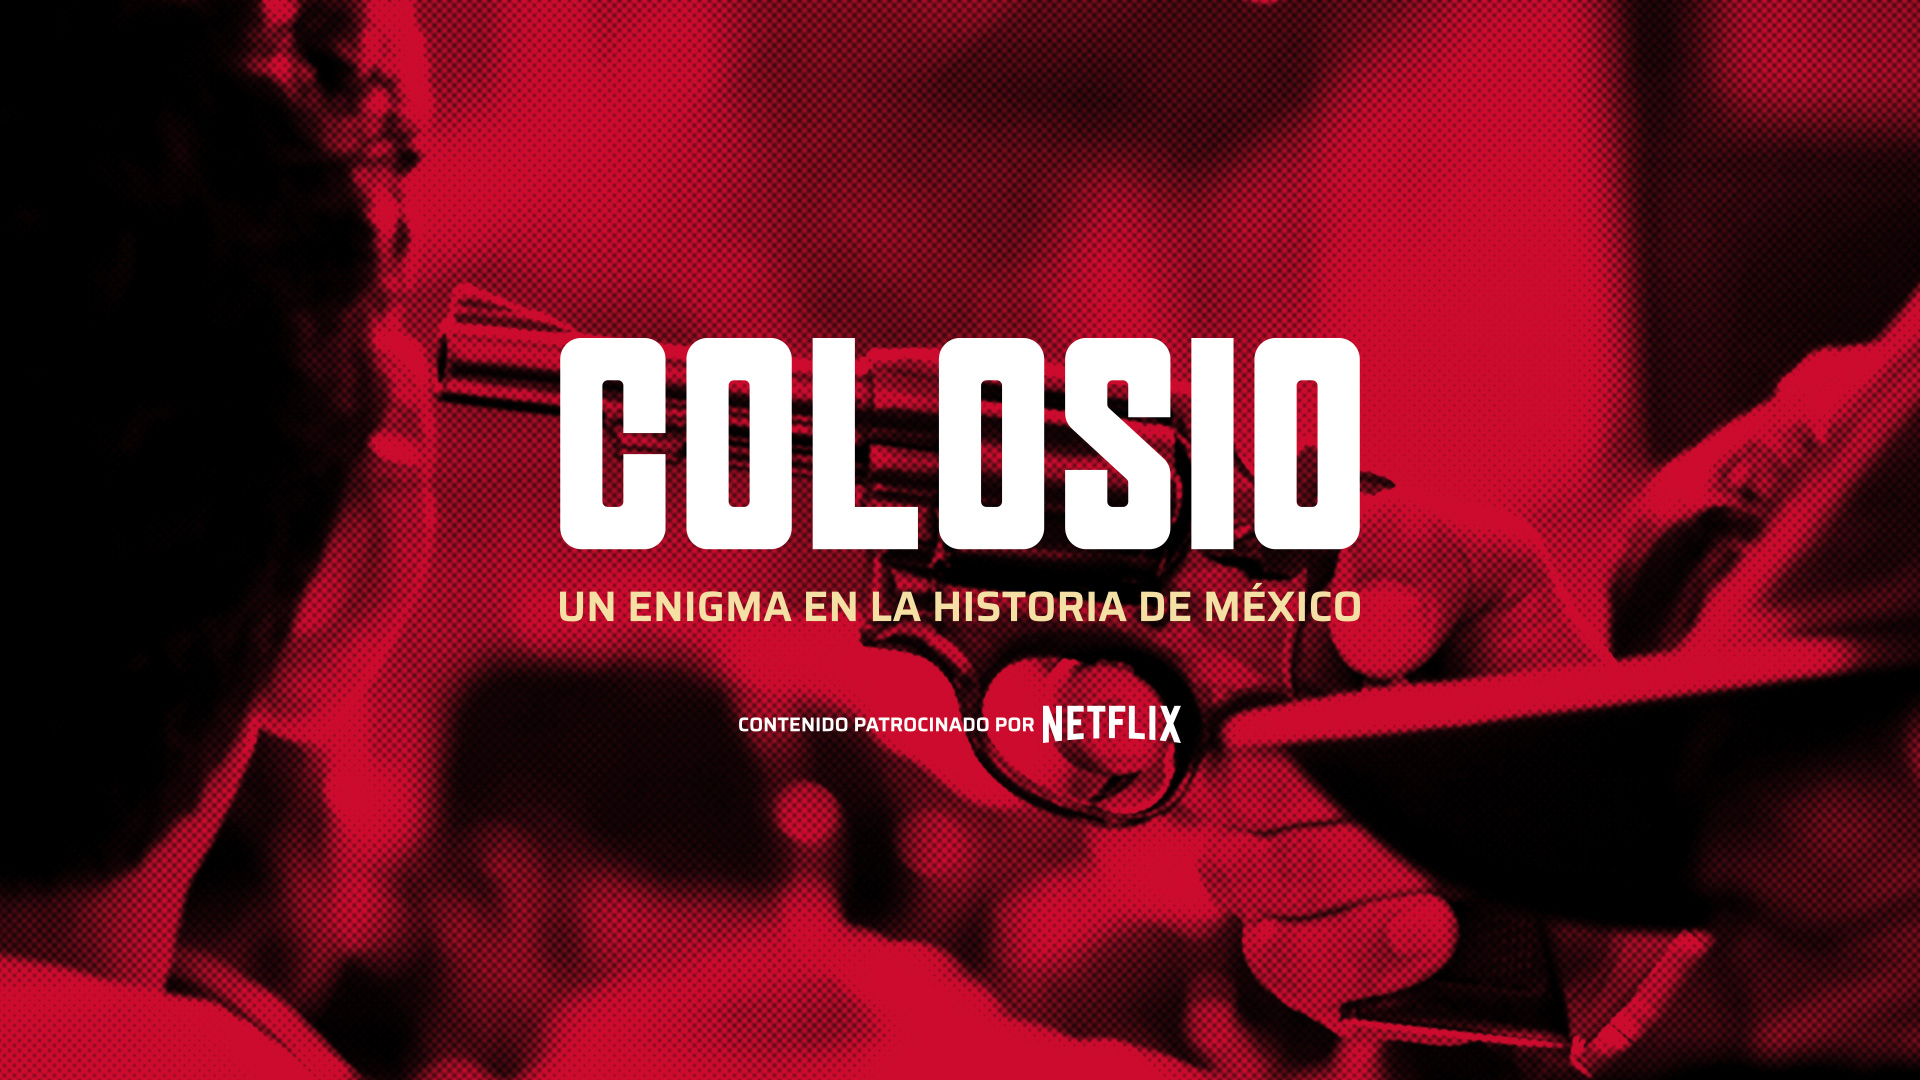 Colosio: Un enigma en la historia de México